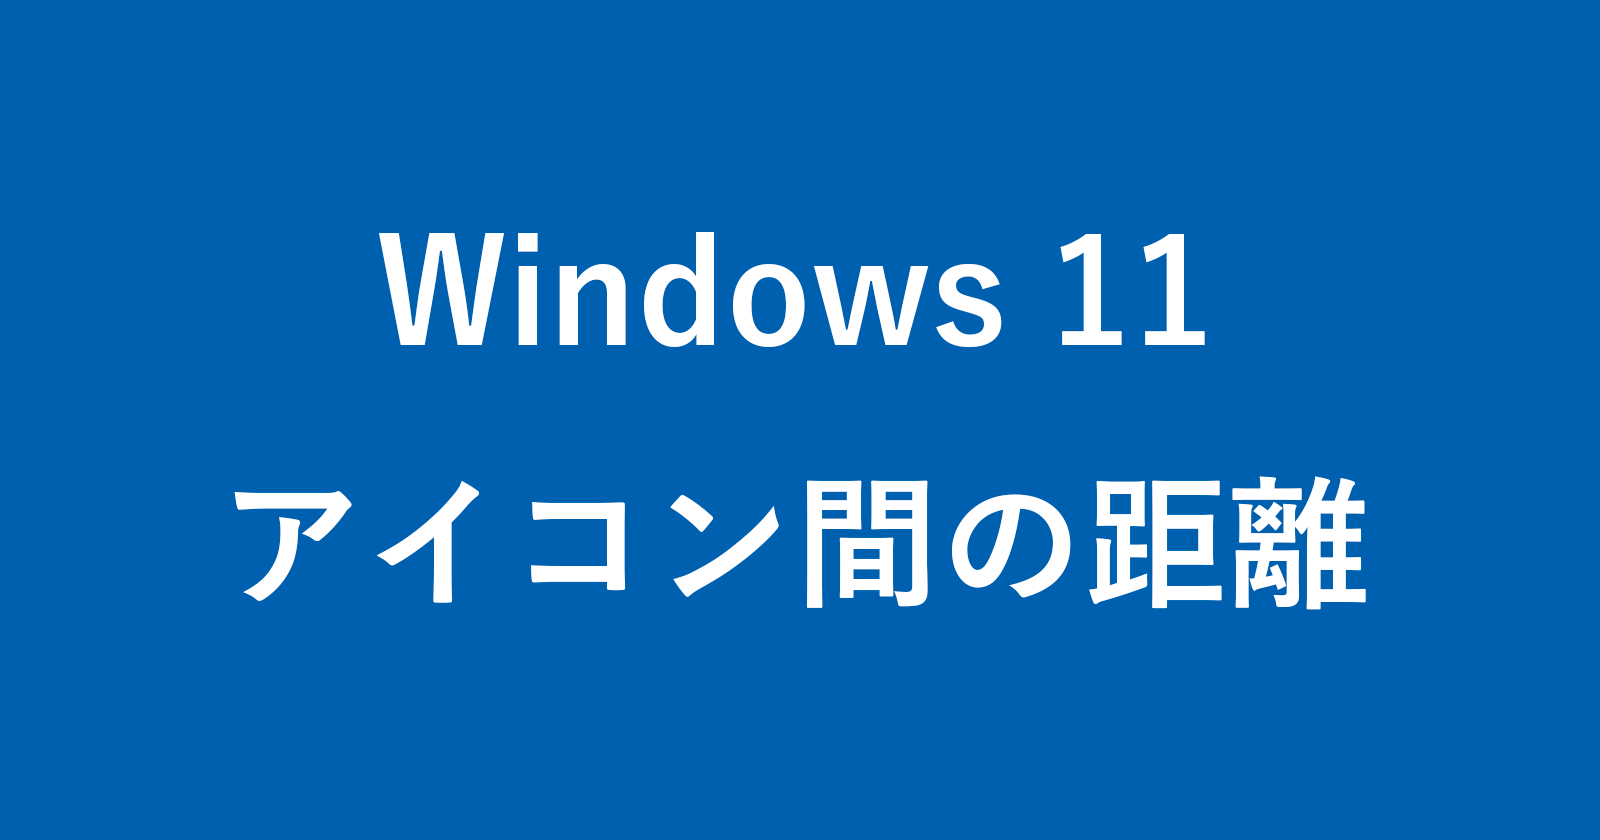 windows 11 desktop icon spacing